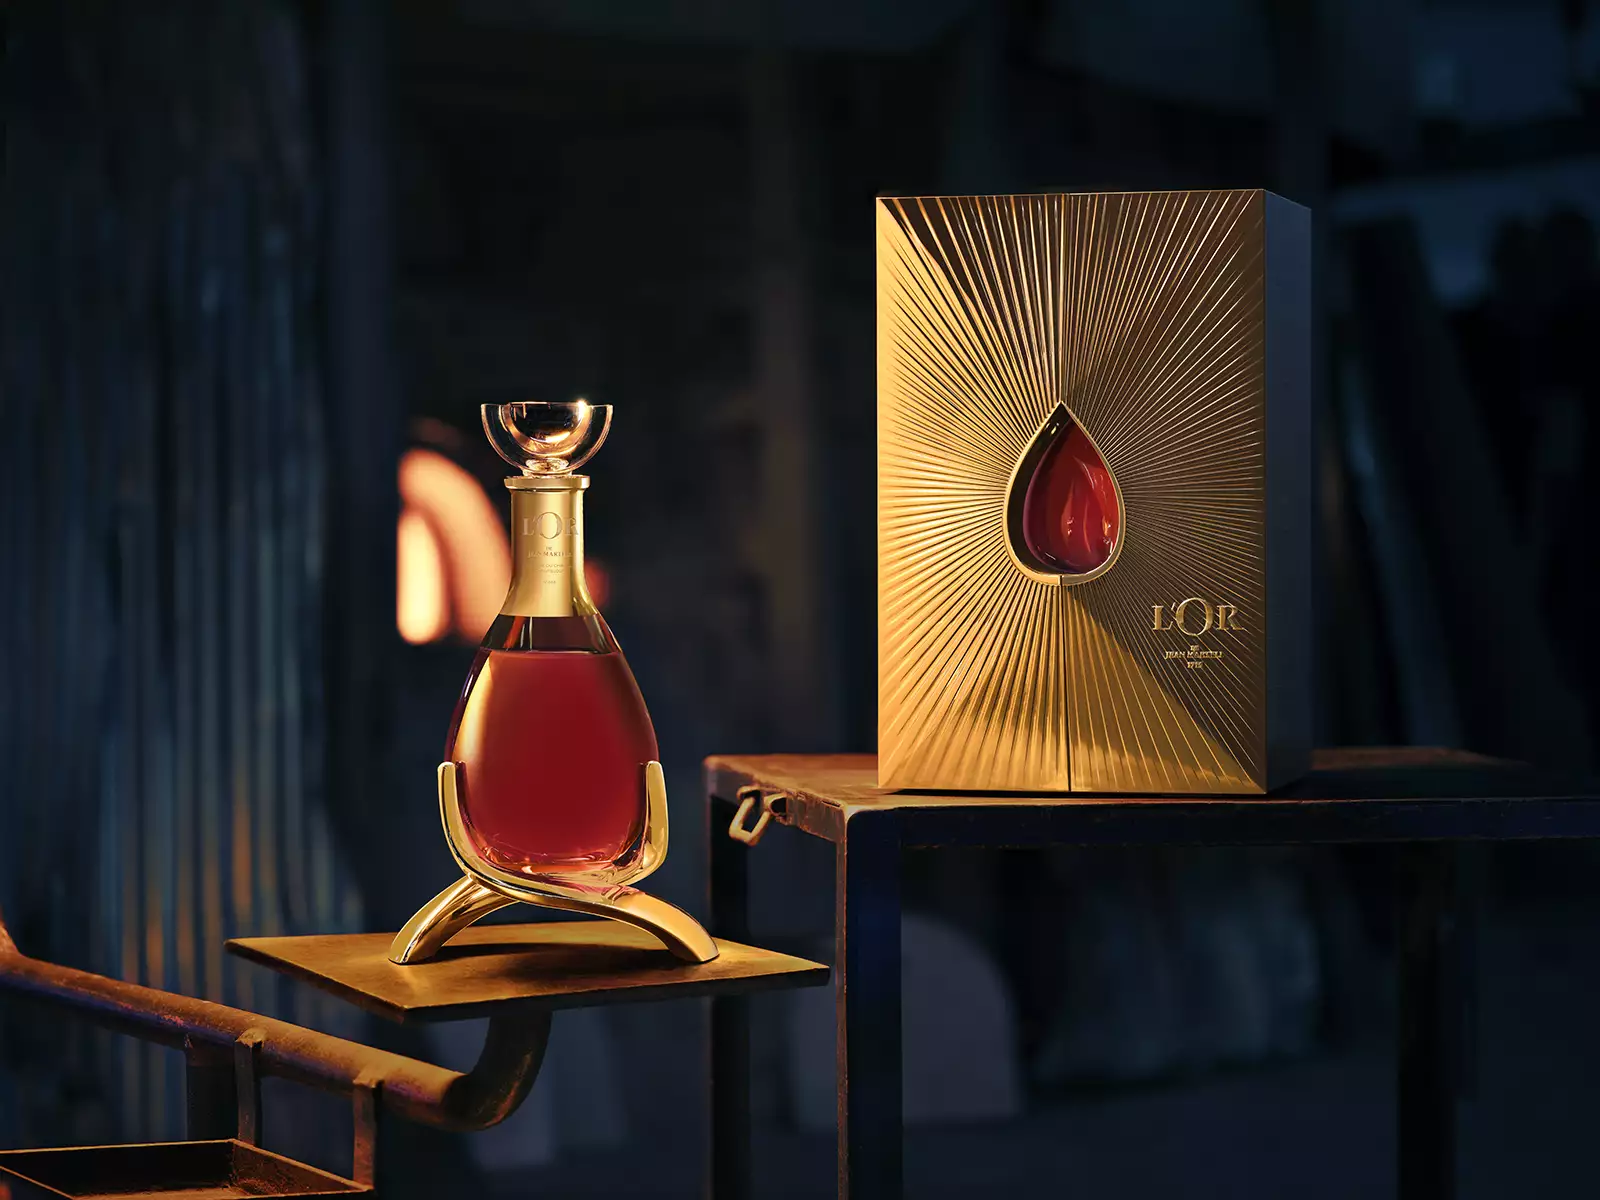 Martell dévoile L'Or de Jean Martell, un cognac ultra-premium vieilli dans du chêne vieux de 300 ans